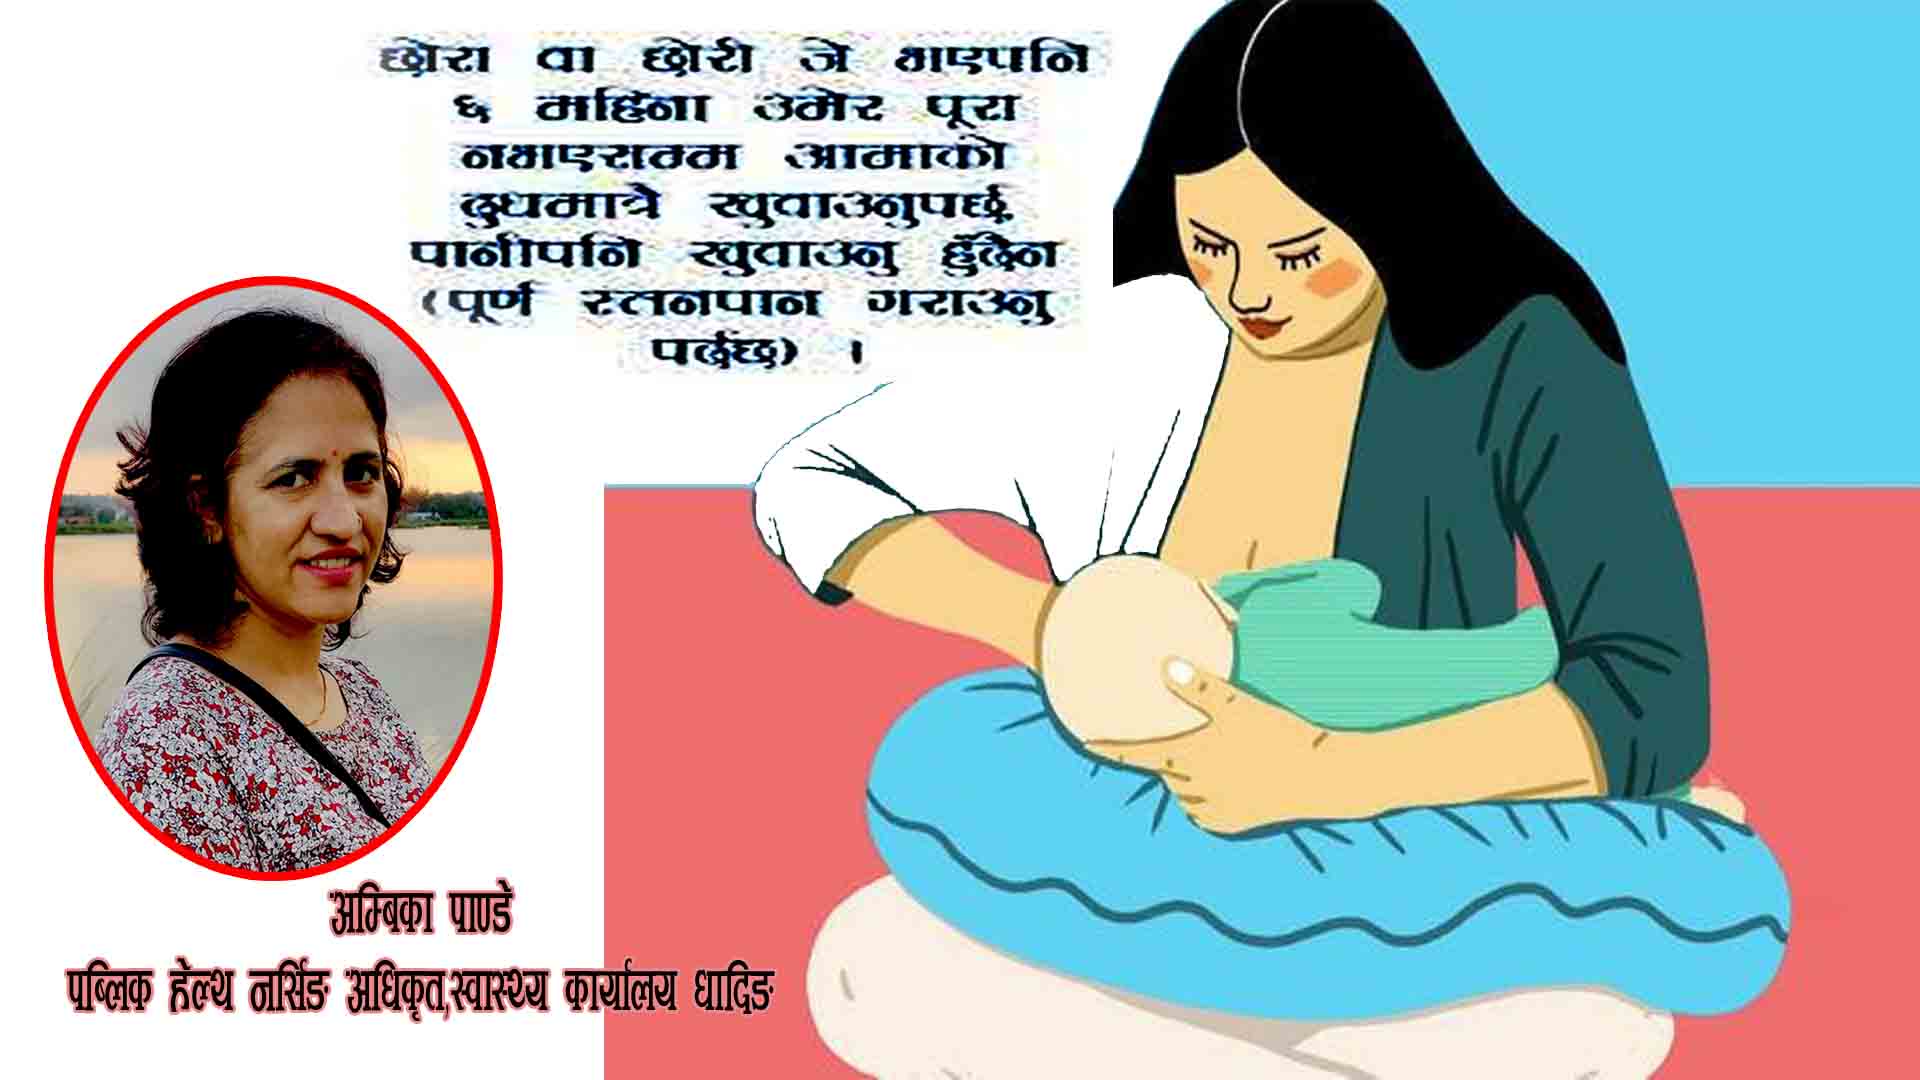 बच्चाको लागी स्तनपान अर्थात आमाको दुध किन महत्वपूर्ण छ?:हेल्थ नर्सिङ अधिकृत पाण्डेसँगको कुराकानी